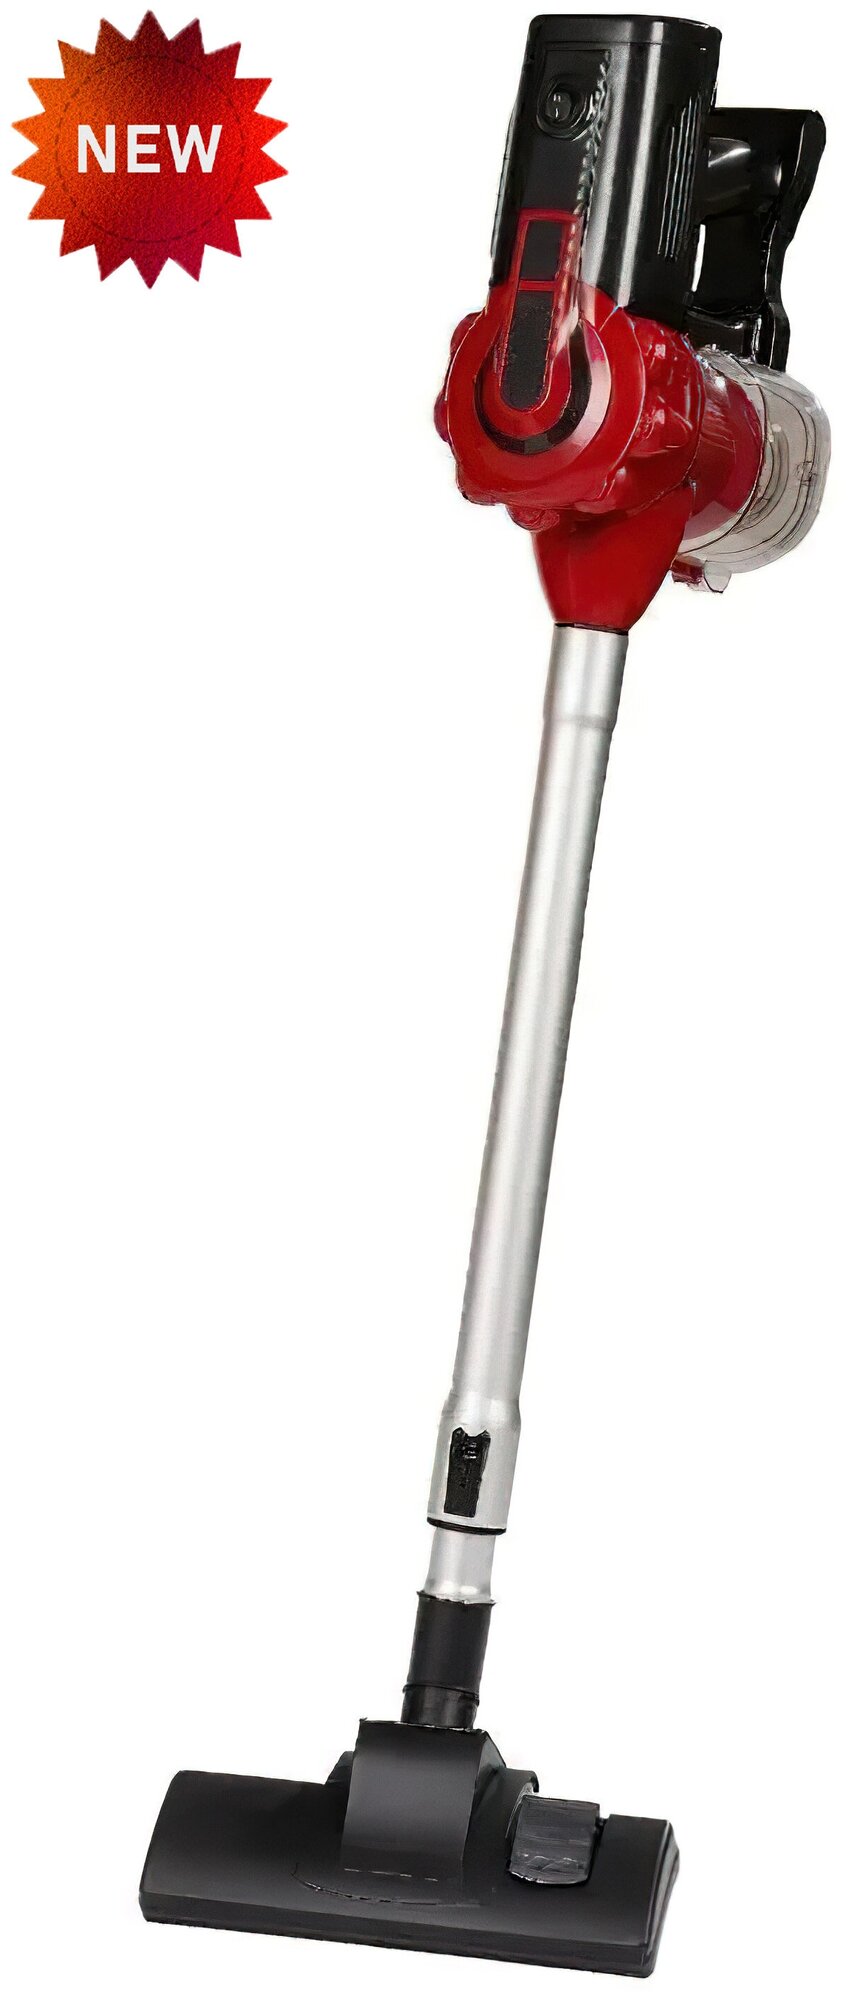 Пылесос пылесос вертикальный бытовой ручной пылесос для уборки дома офиса телескопическая труба с защитой от перегрева длина шнура 6м2200Вт красный